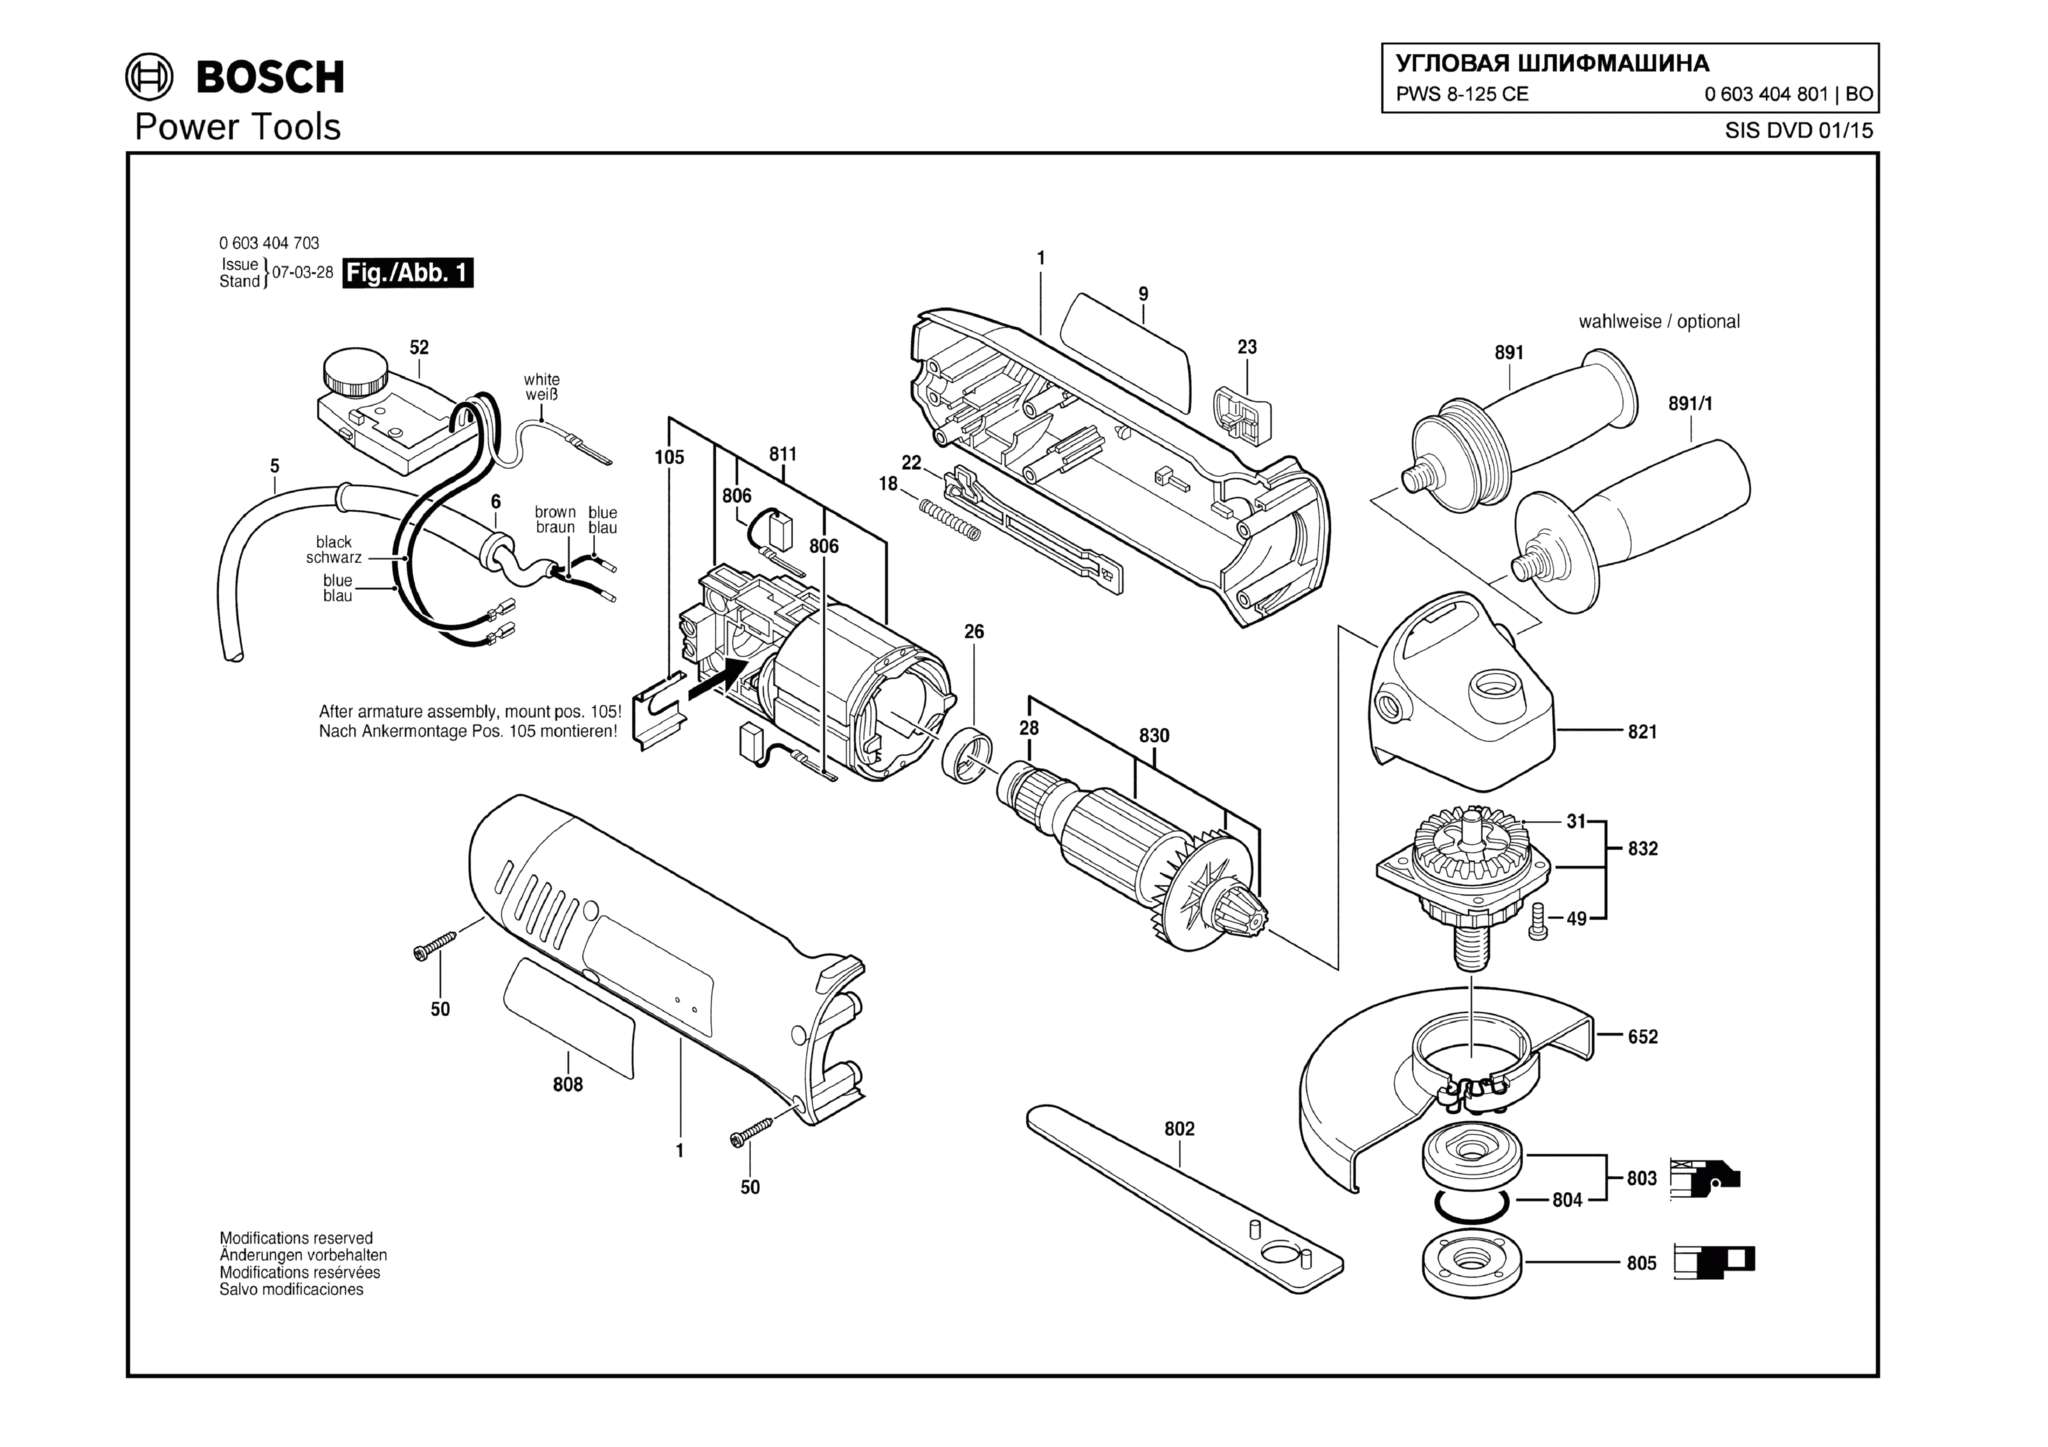 Запчасти, схема и деталировка Bosch PWS 8-125 CE (ТИП 0603404801)